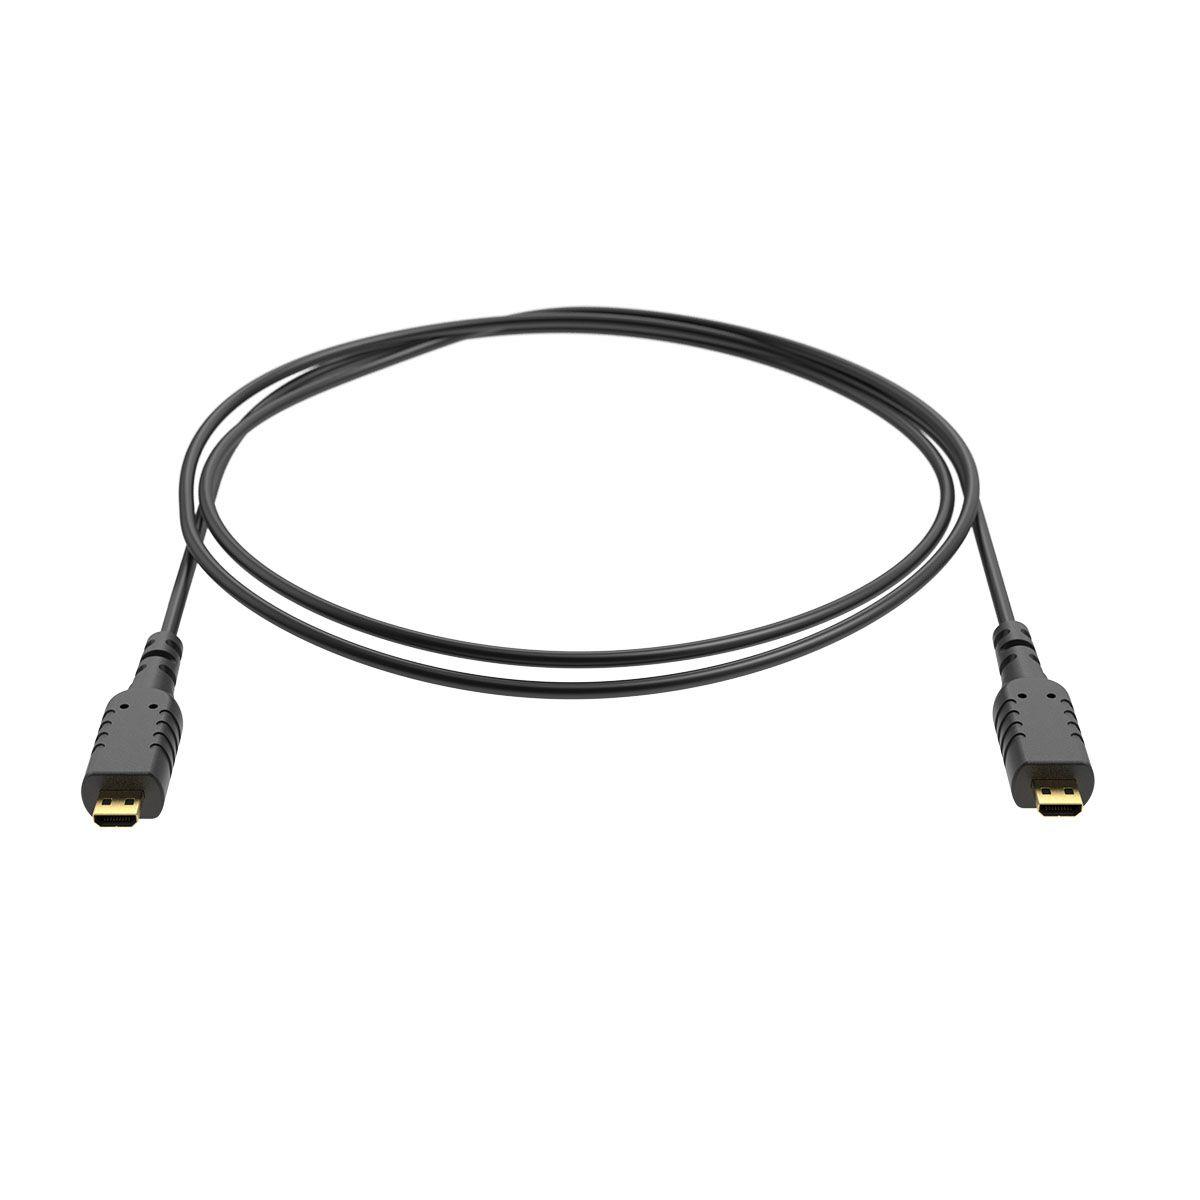 Câble micro HMDI micro HDMI 80CM - 3.6.9 Univisual